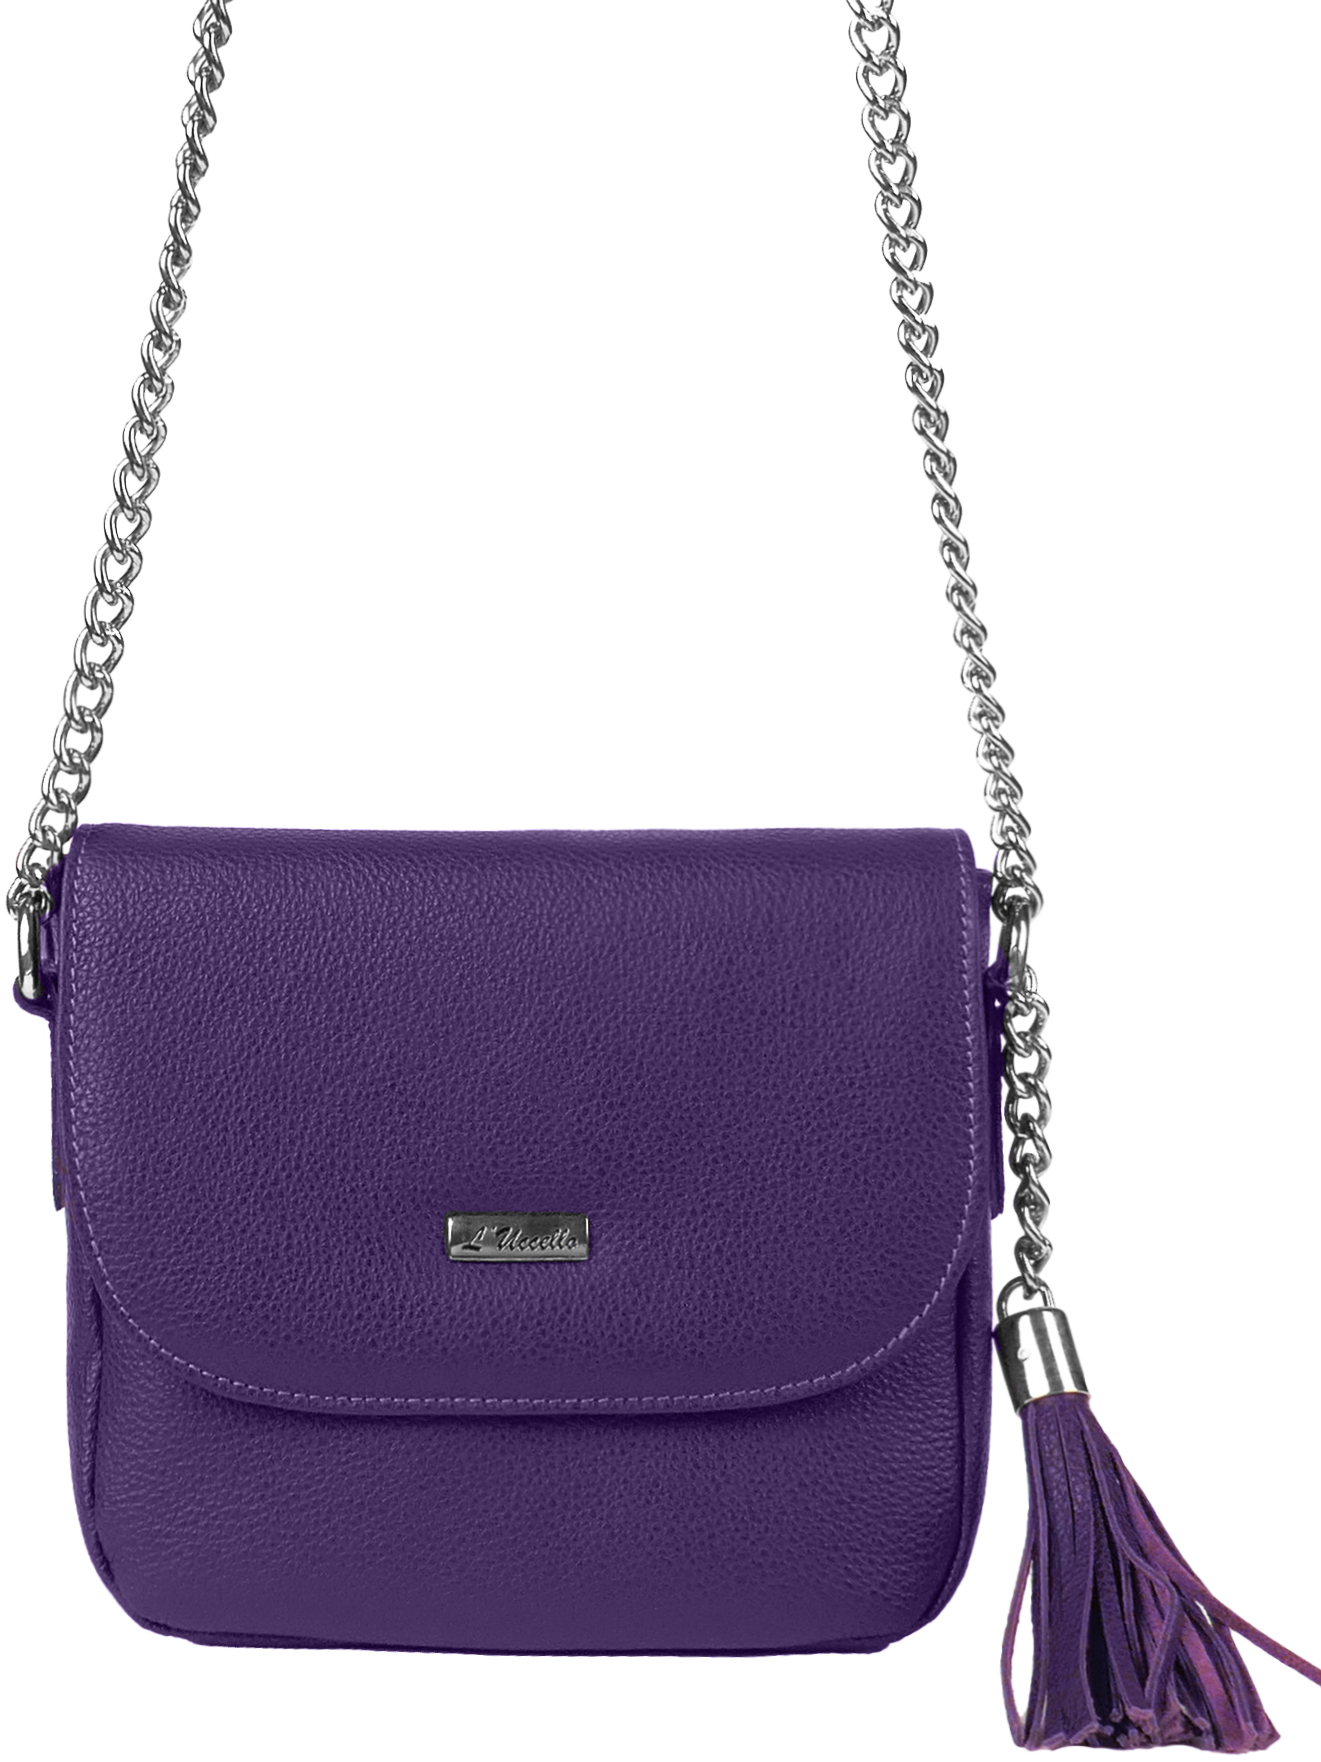 Комплект (брелок+сумка) женский L'Uccello 4051, фиолетовый